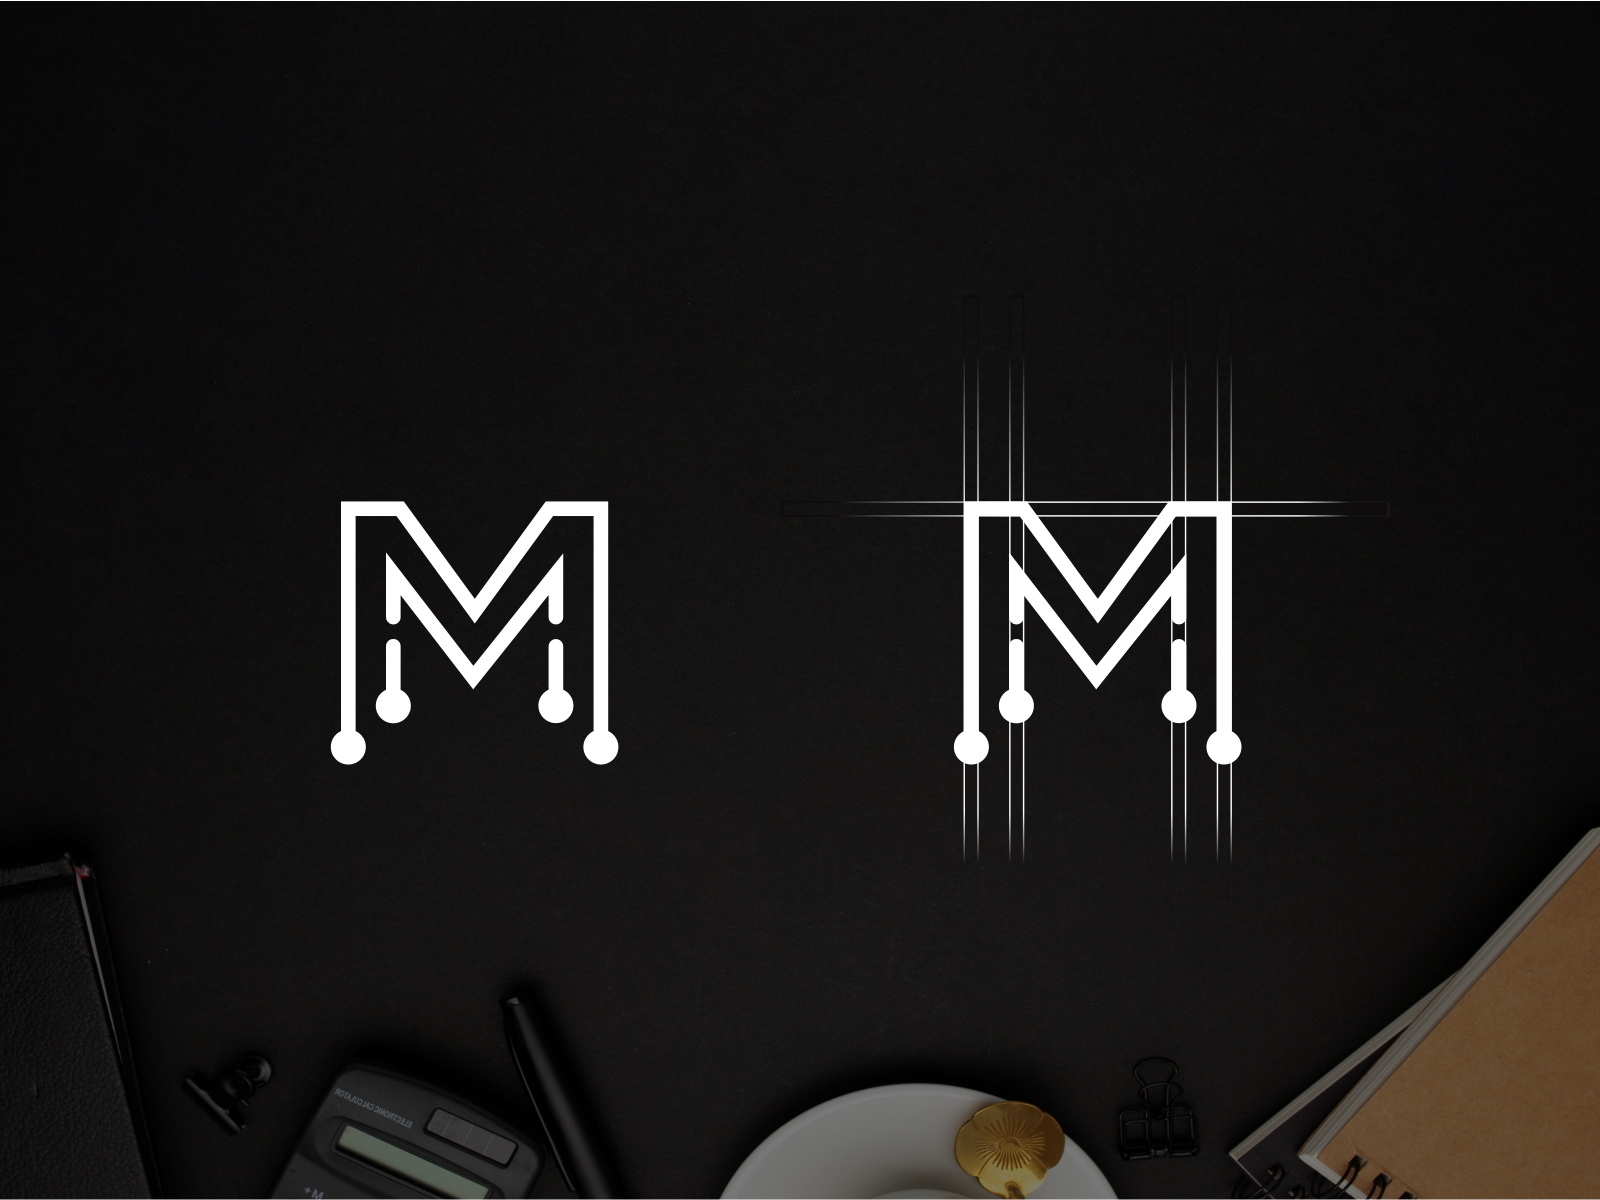 letter mm logo